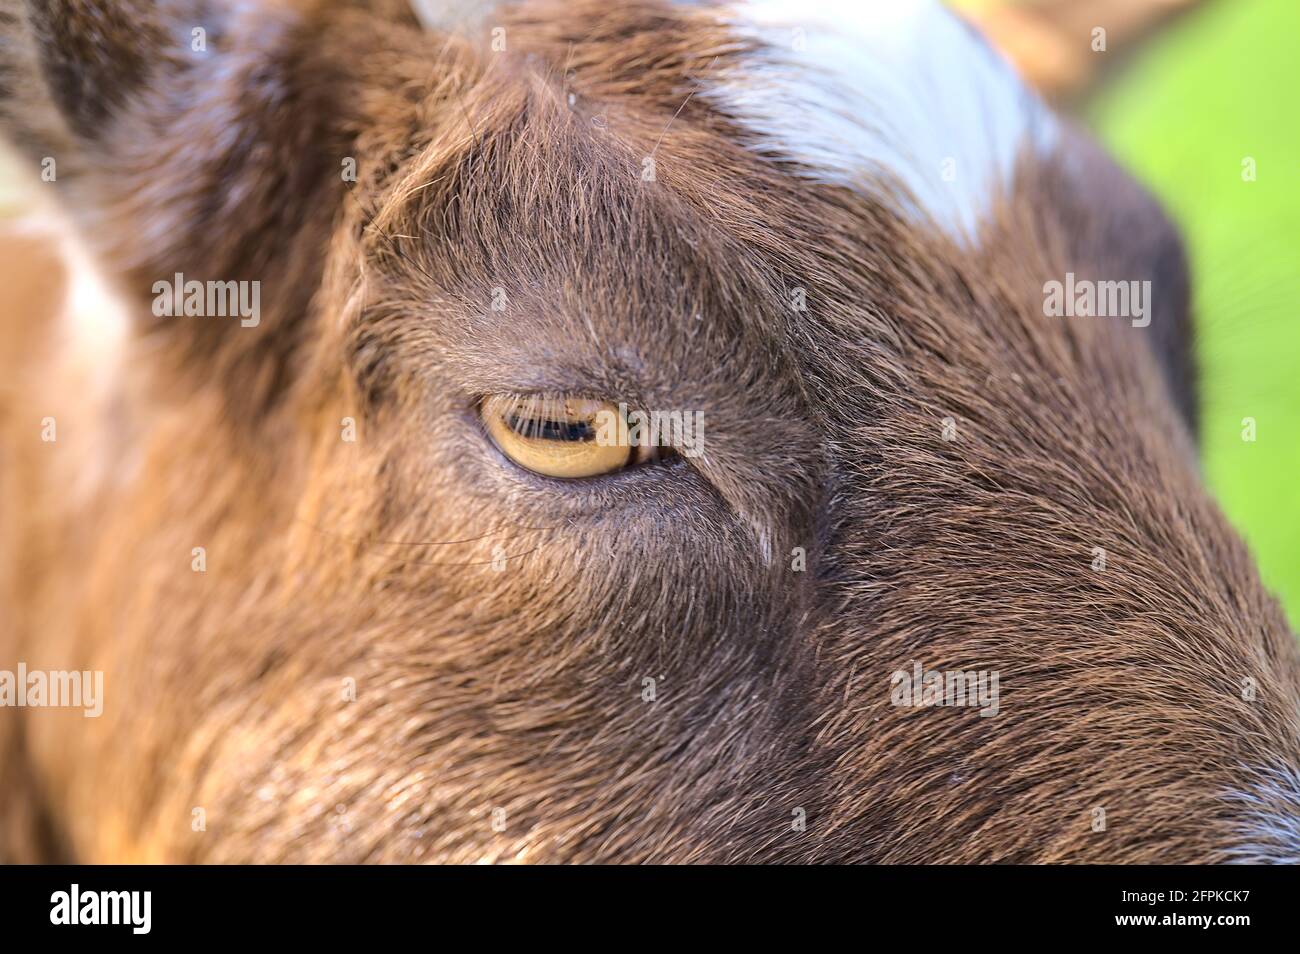 Belle vue rapprochée de l'œil jaune de chèvre à côté de la clôture en bois de la ferme de Goatstown à Dublin, en Irlande. Mise au point douce et sélective Banque D'Images